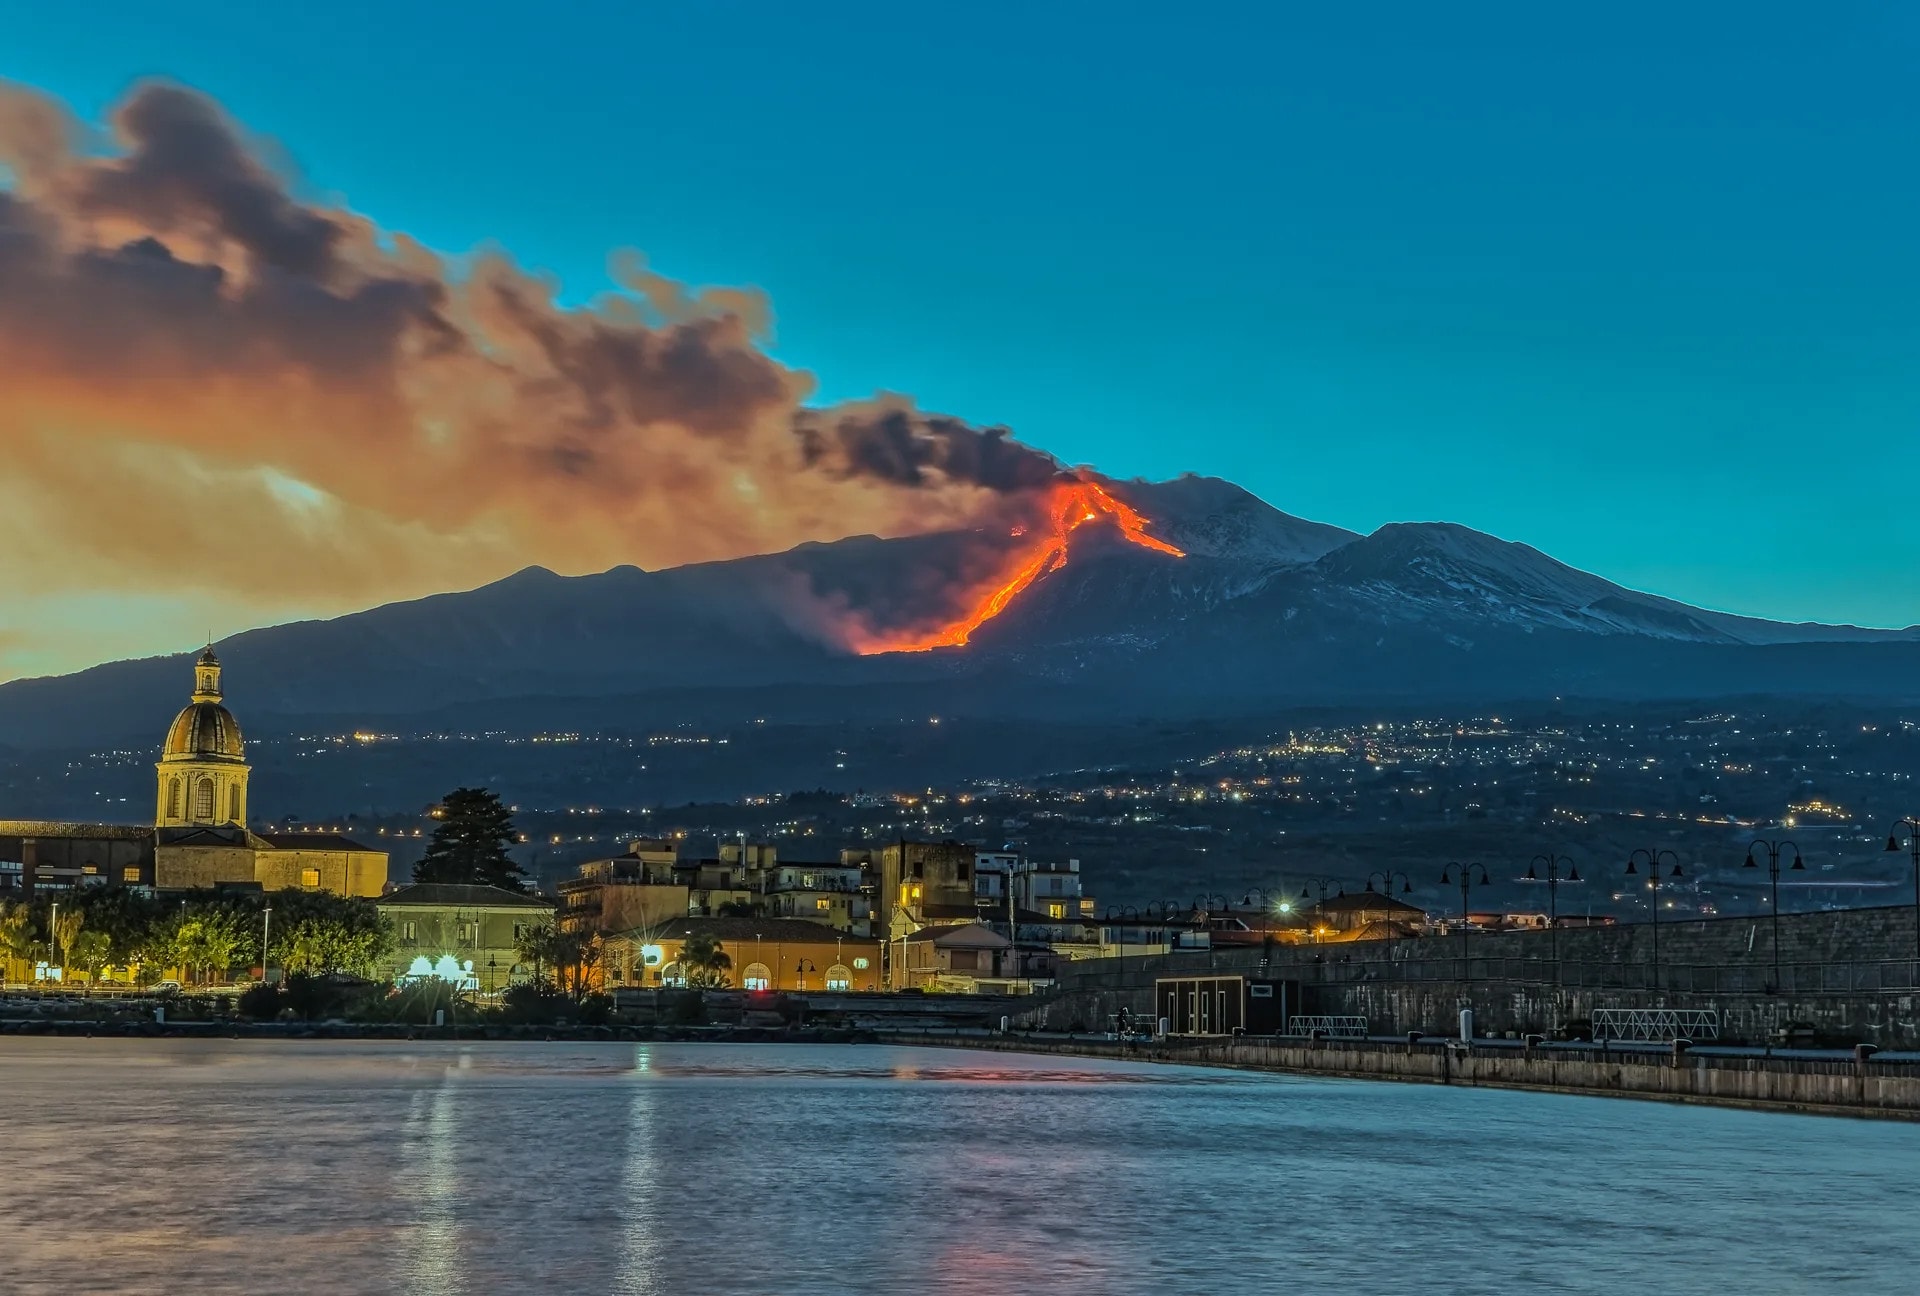 Eruzione dell’Etna del 16 febbraio 2021 – Raccolta di mie immagini